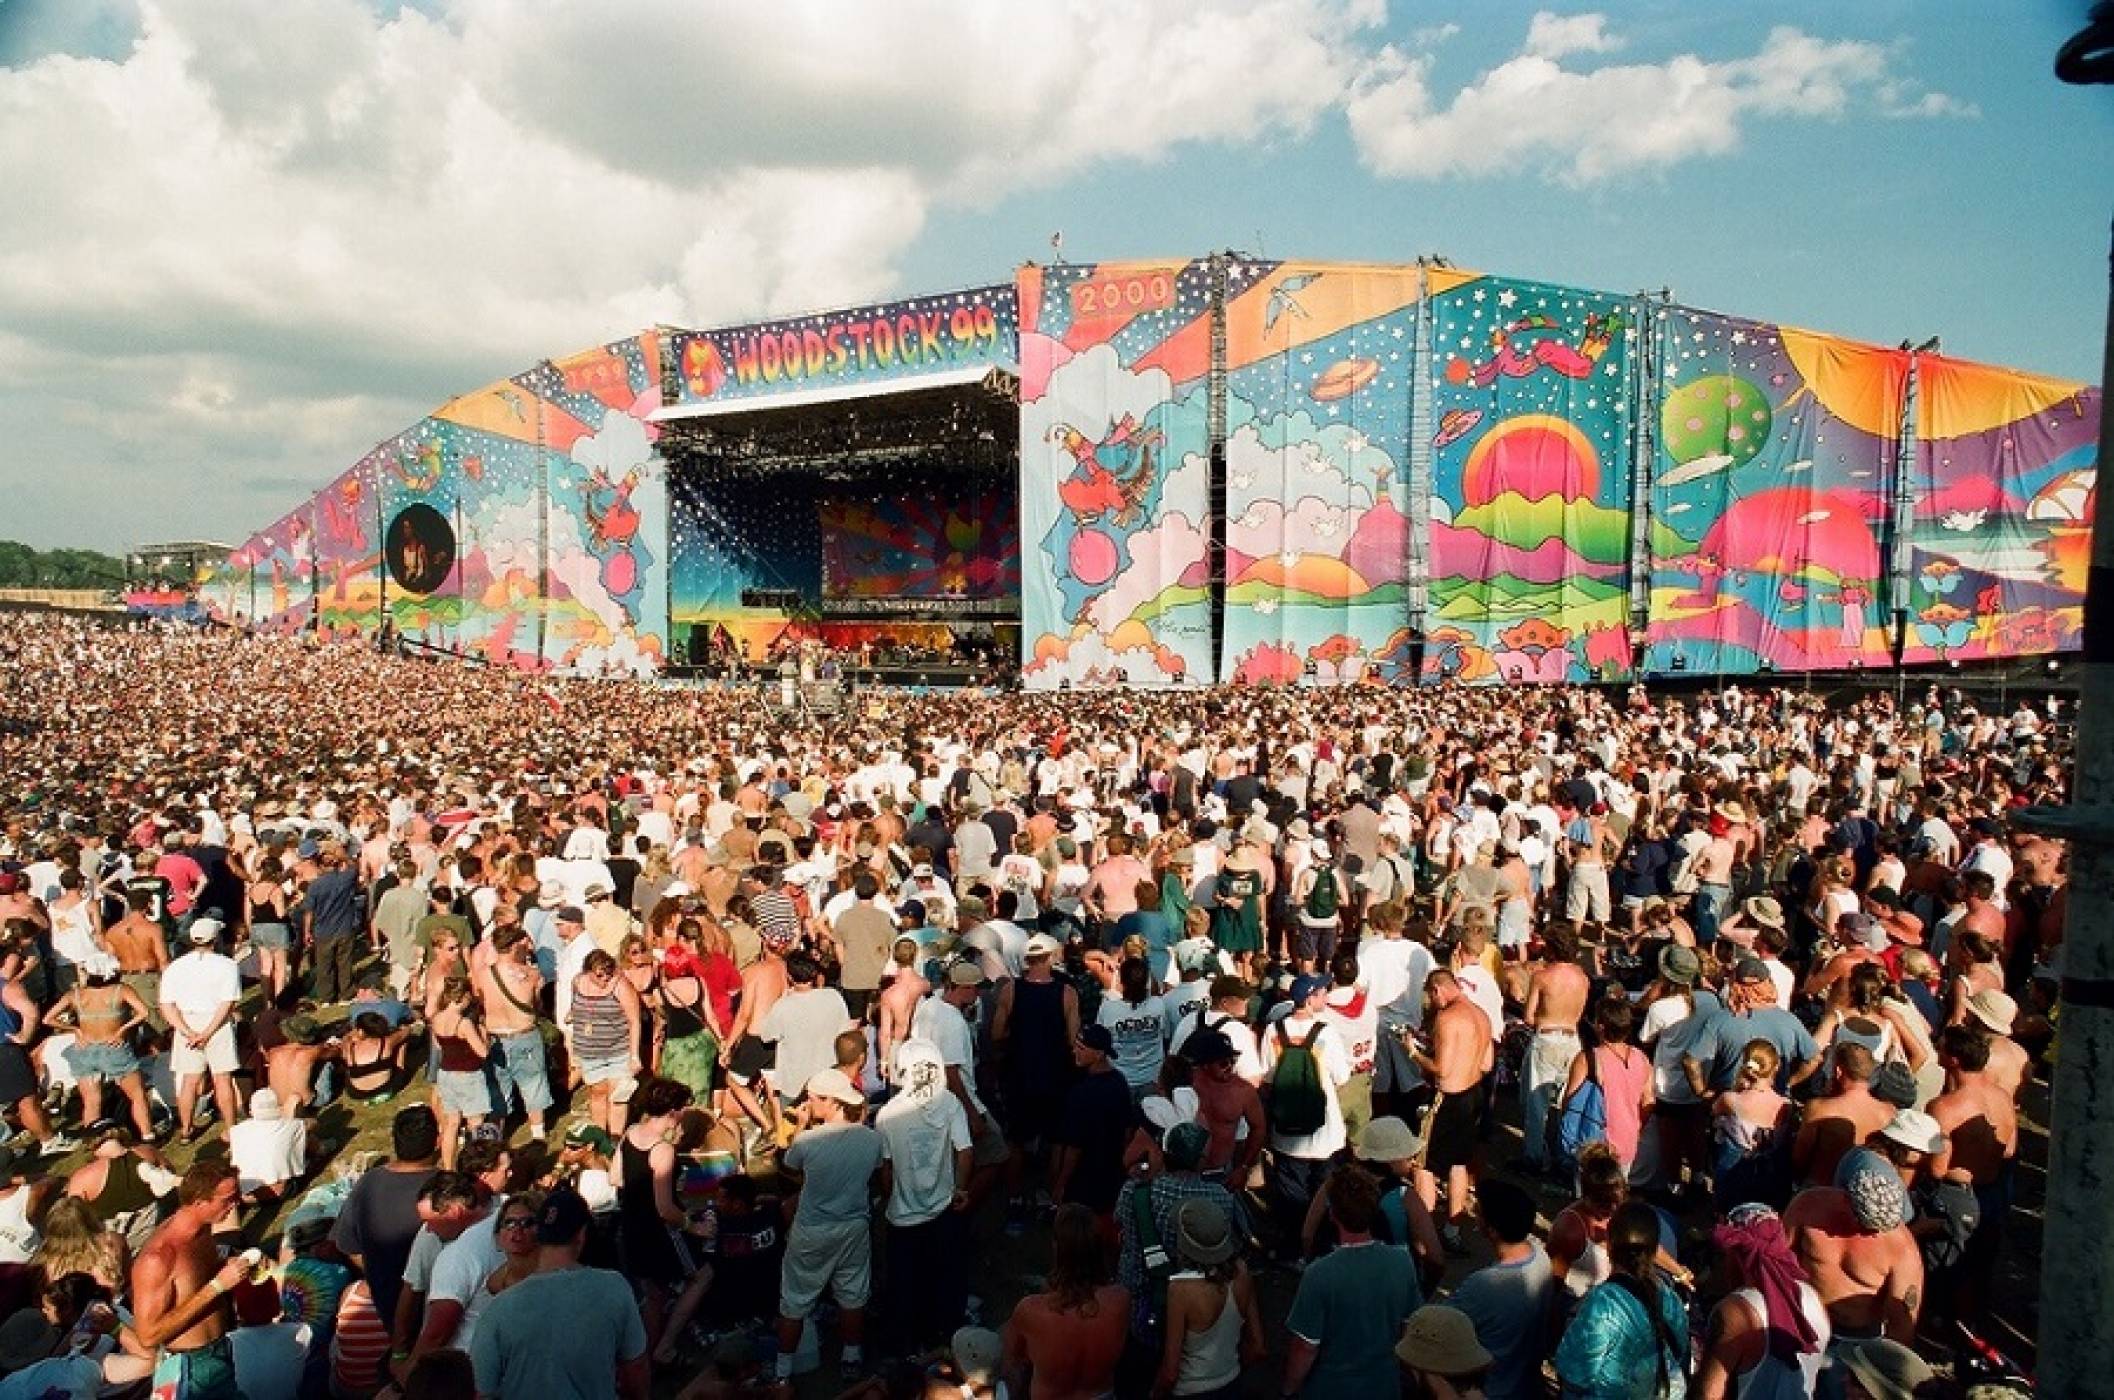 „Музикална кутия Удсток 99: мир, любов и ярост“ дебютира на 24 юли,  отбелязвайки 22-рата годишнина от фестивала (ВИДЕО)